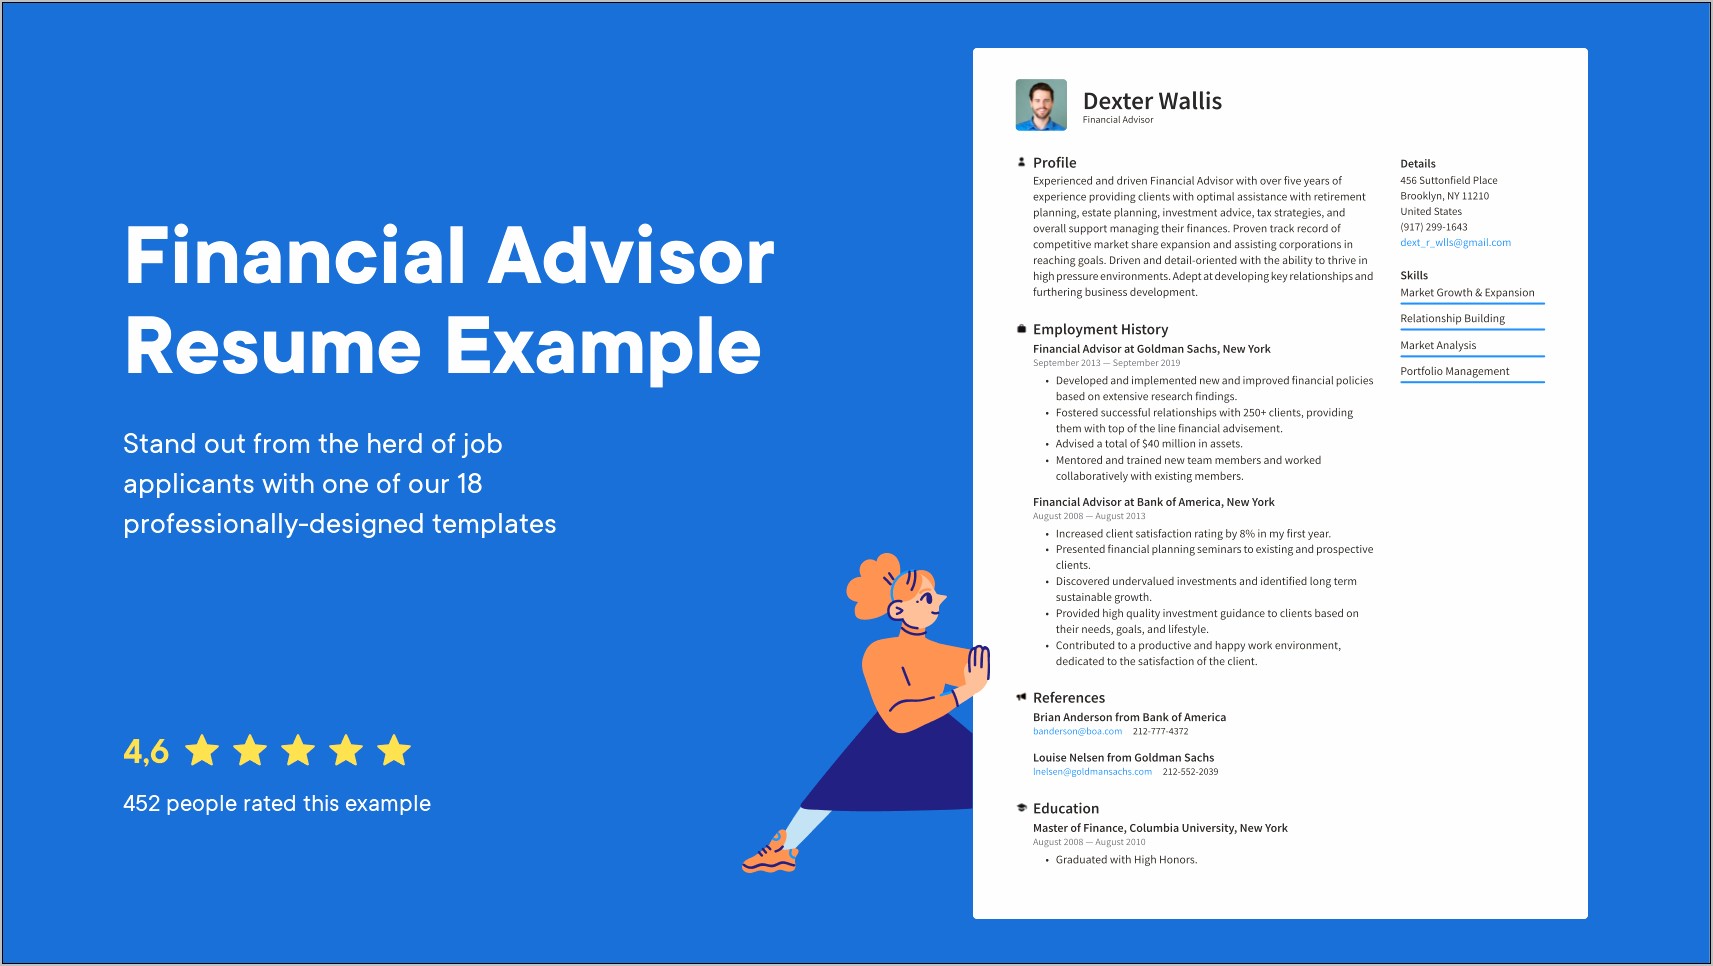 Resume Description For A Financial Advisor